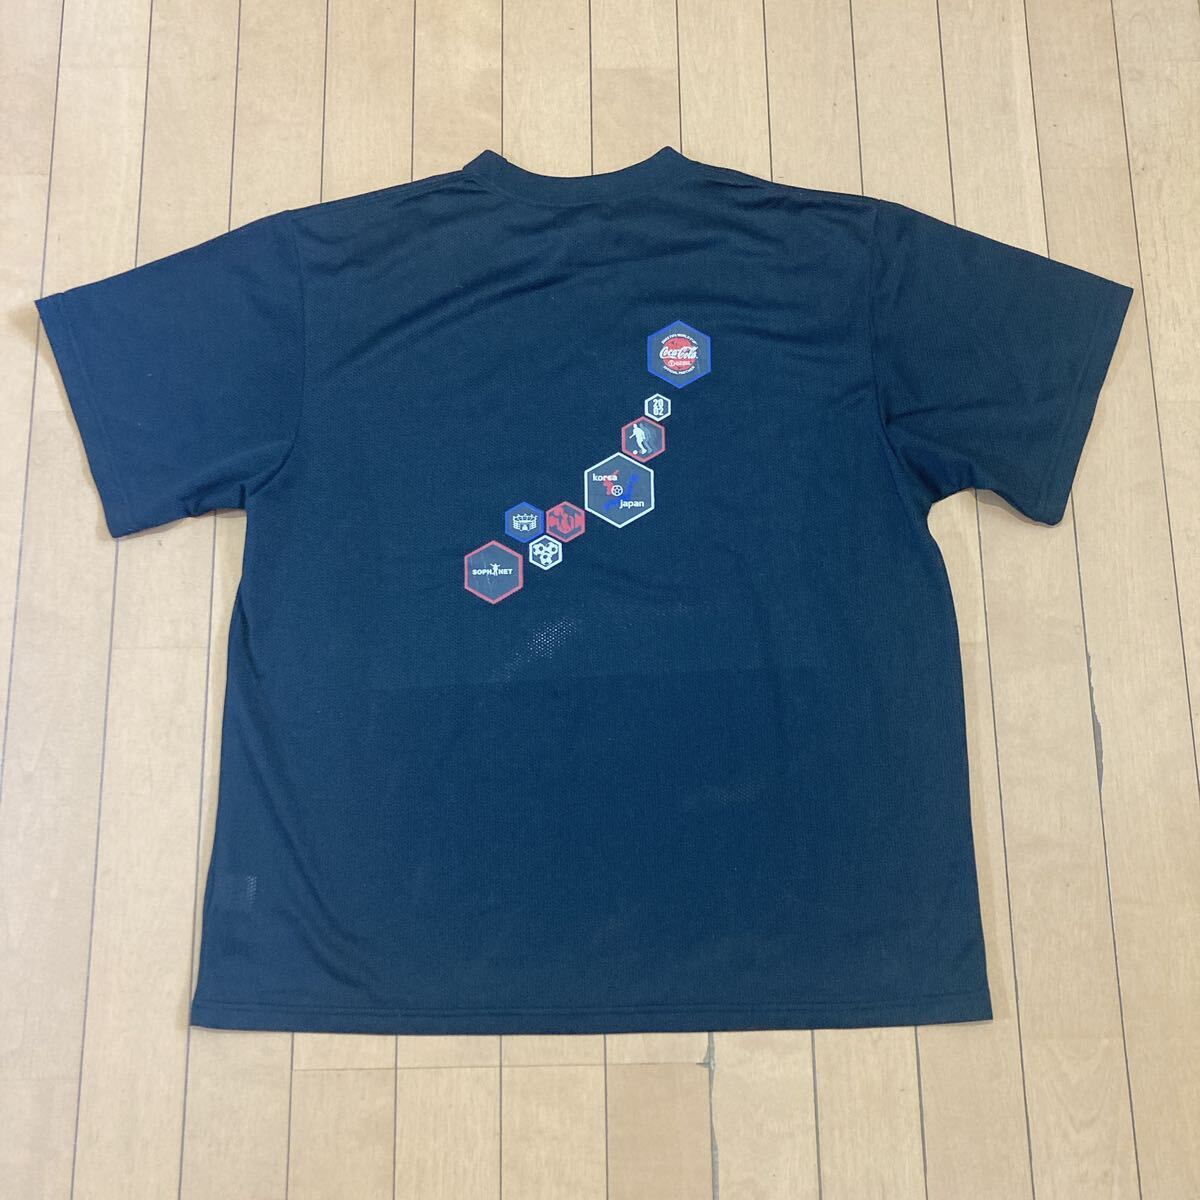 2002日韓W杯 SOPH.NETコラボ Tシャツ Mトレーニング シャツ Tシャツ 半袖 ユニフォーム の画像4